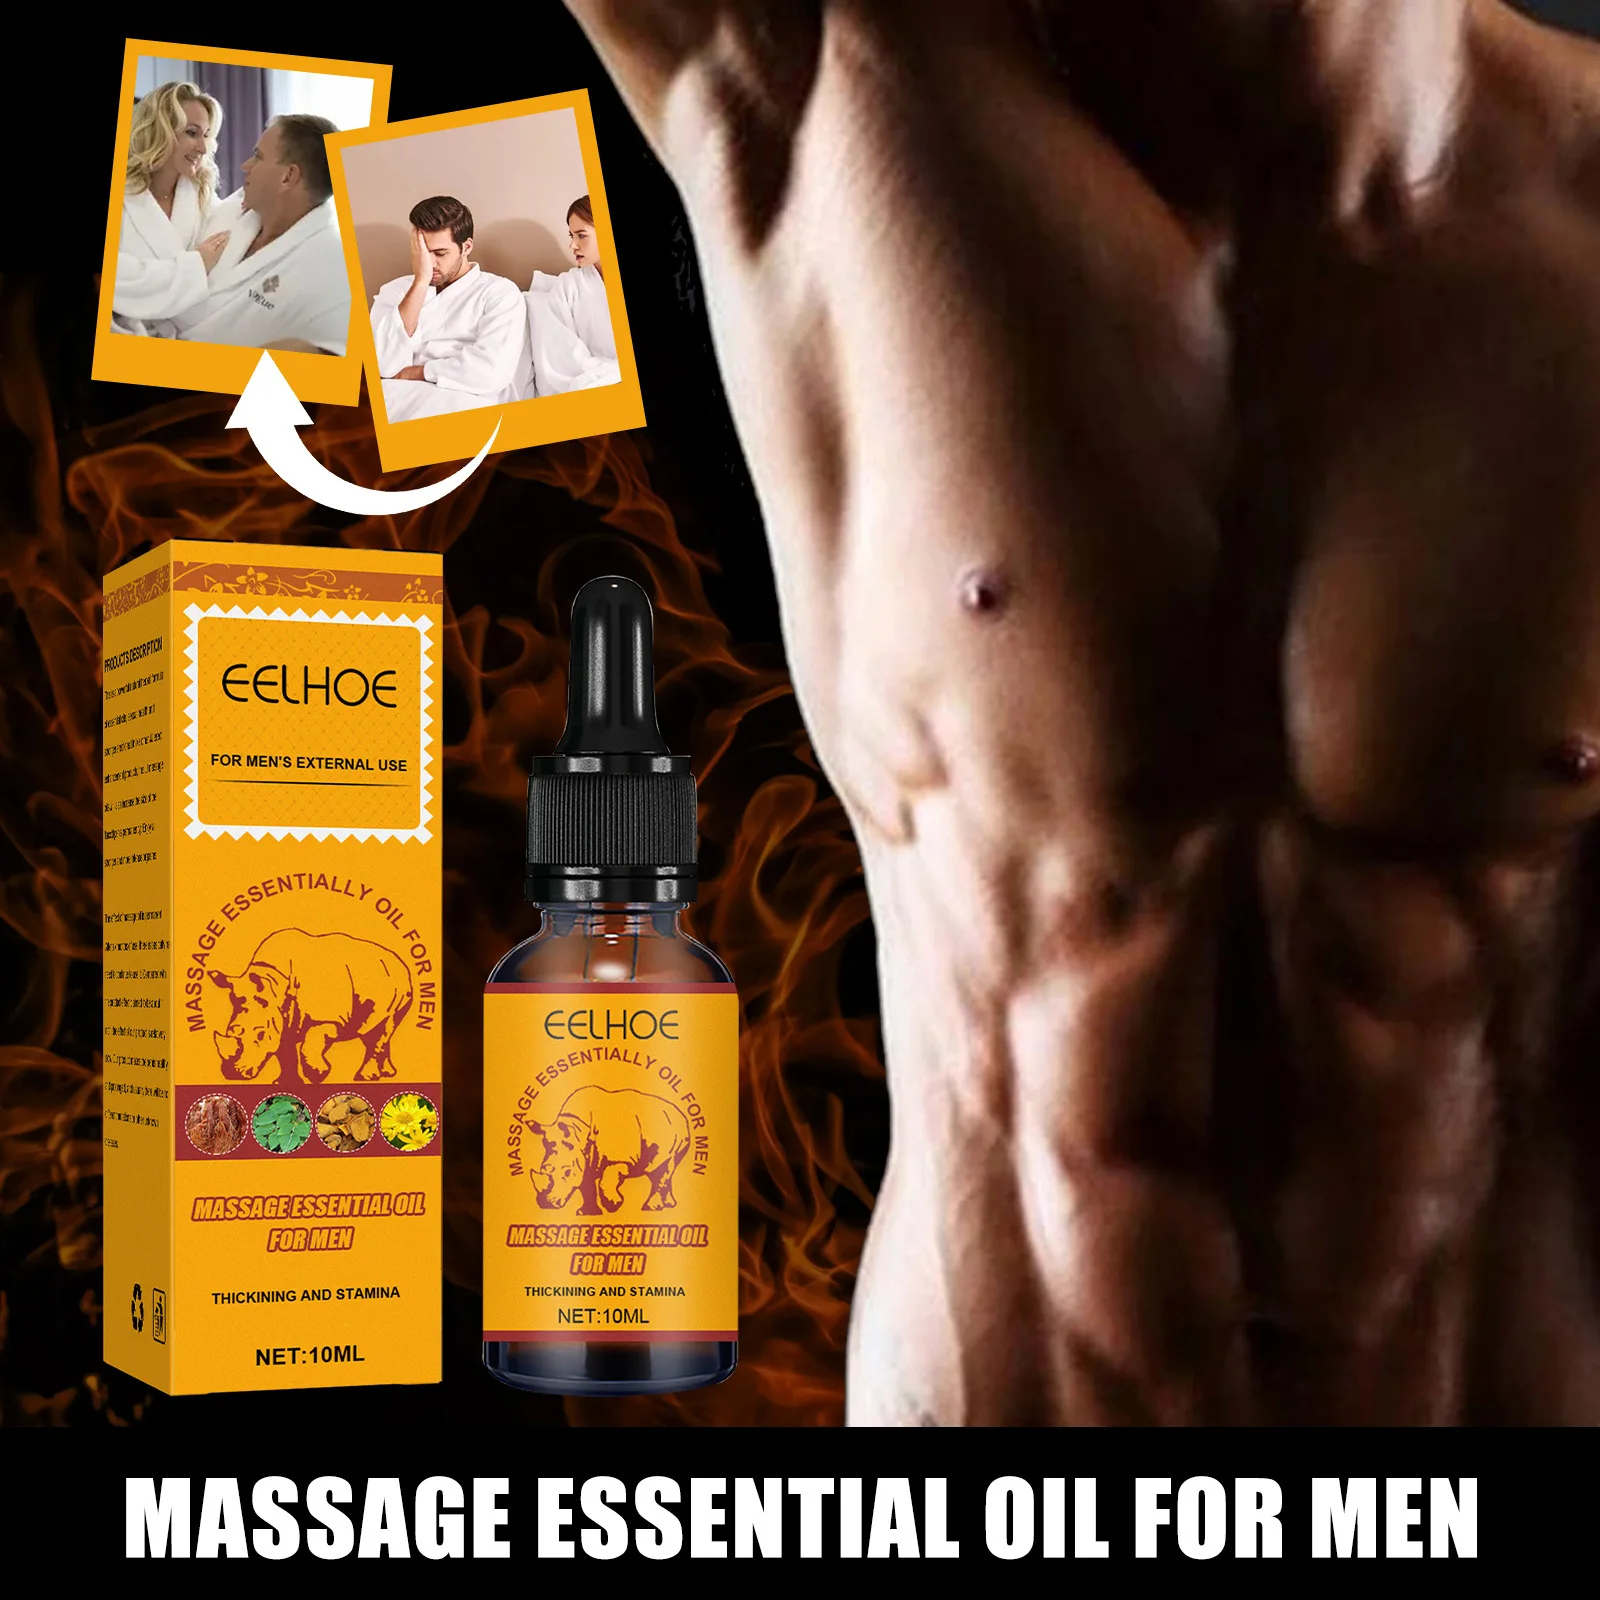 

Мужское массажное эфирное масло быстро сжигает мышцы, мужская сила может поддерживать массаж, уход за телом, упражнения, ремонт, эфирное мас...